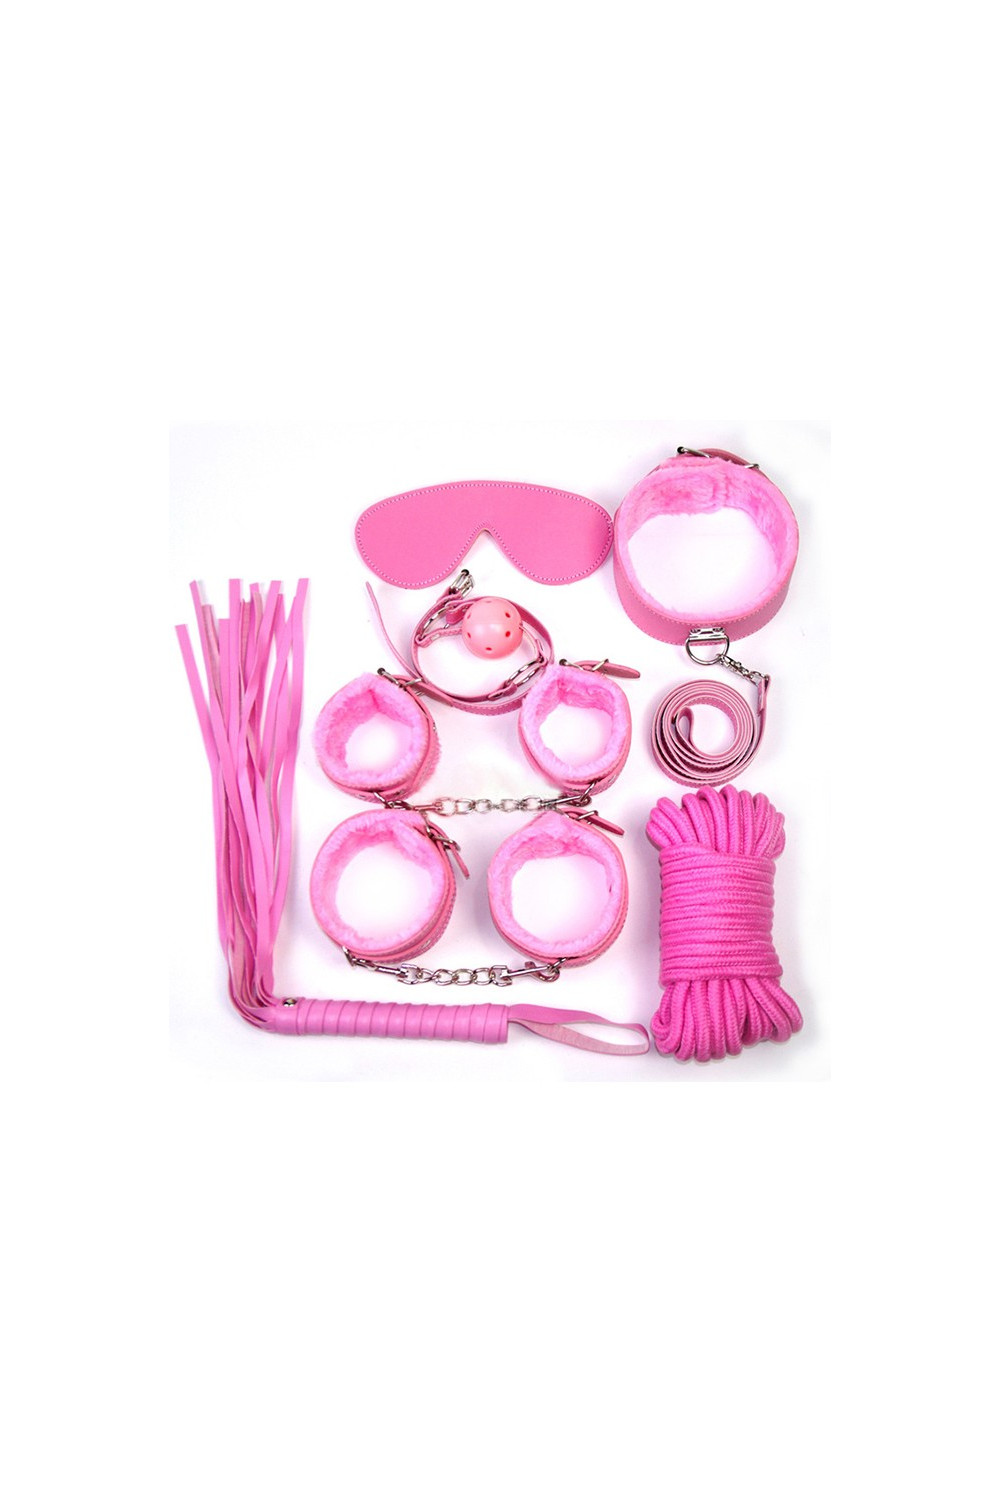 Kit bondage rose à retrouver dans notre gamme sex-toys